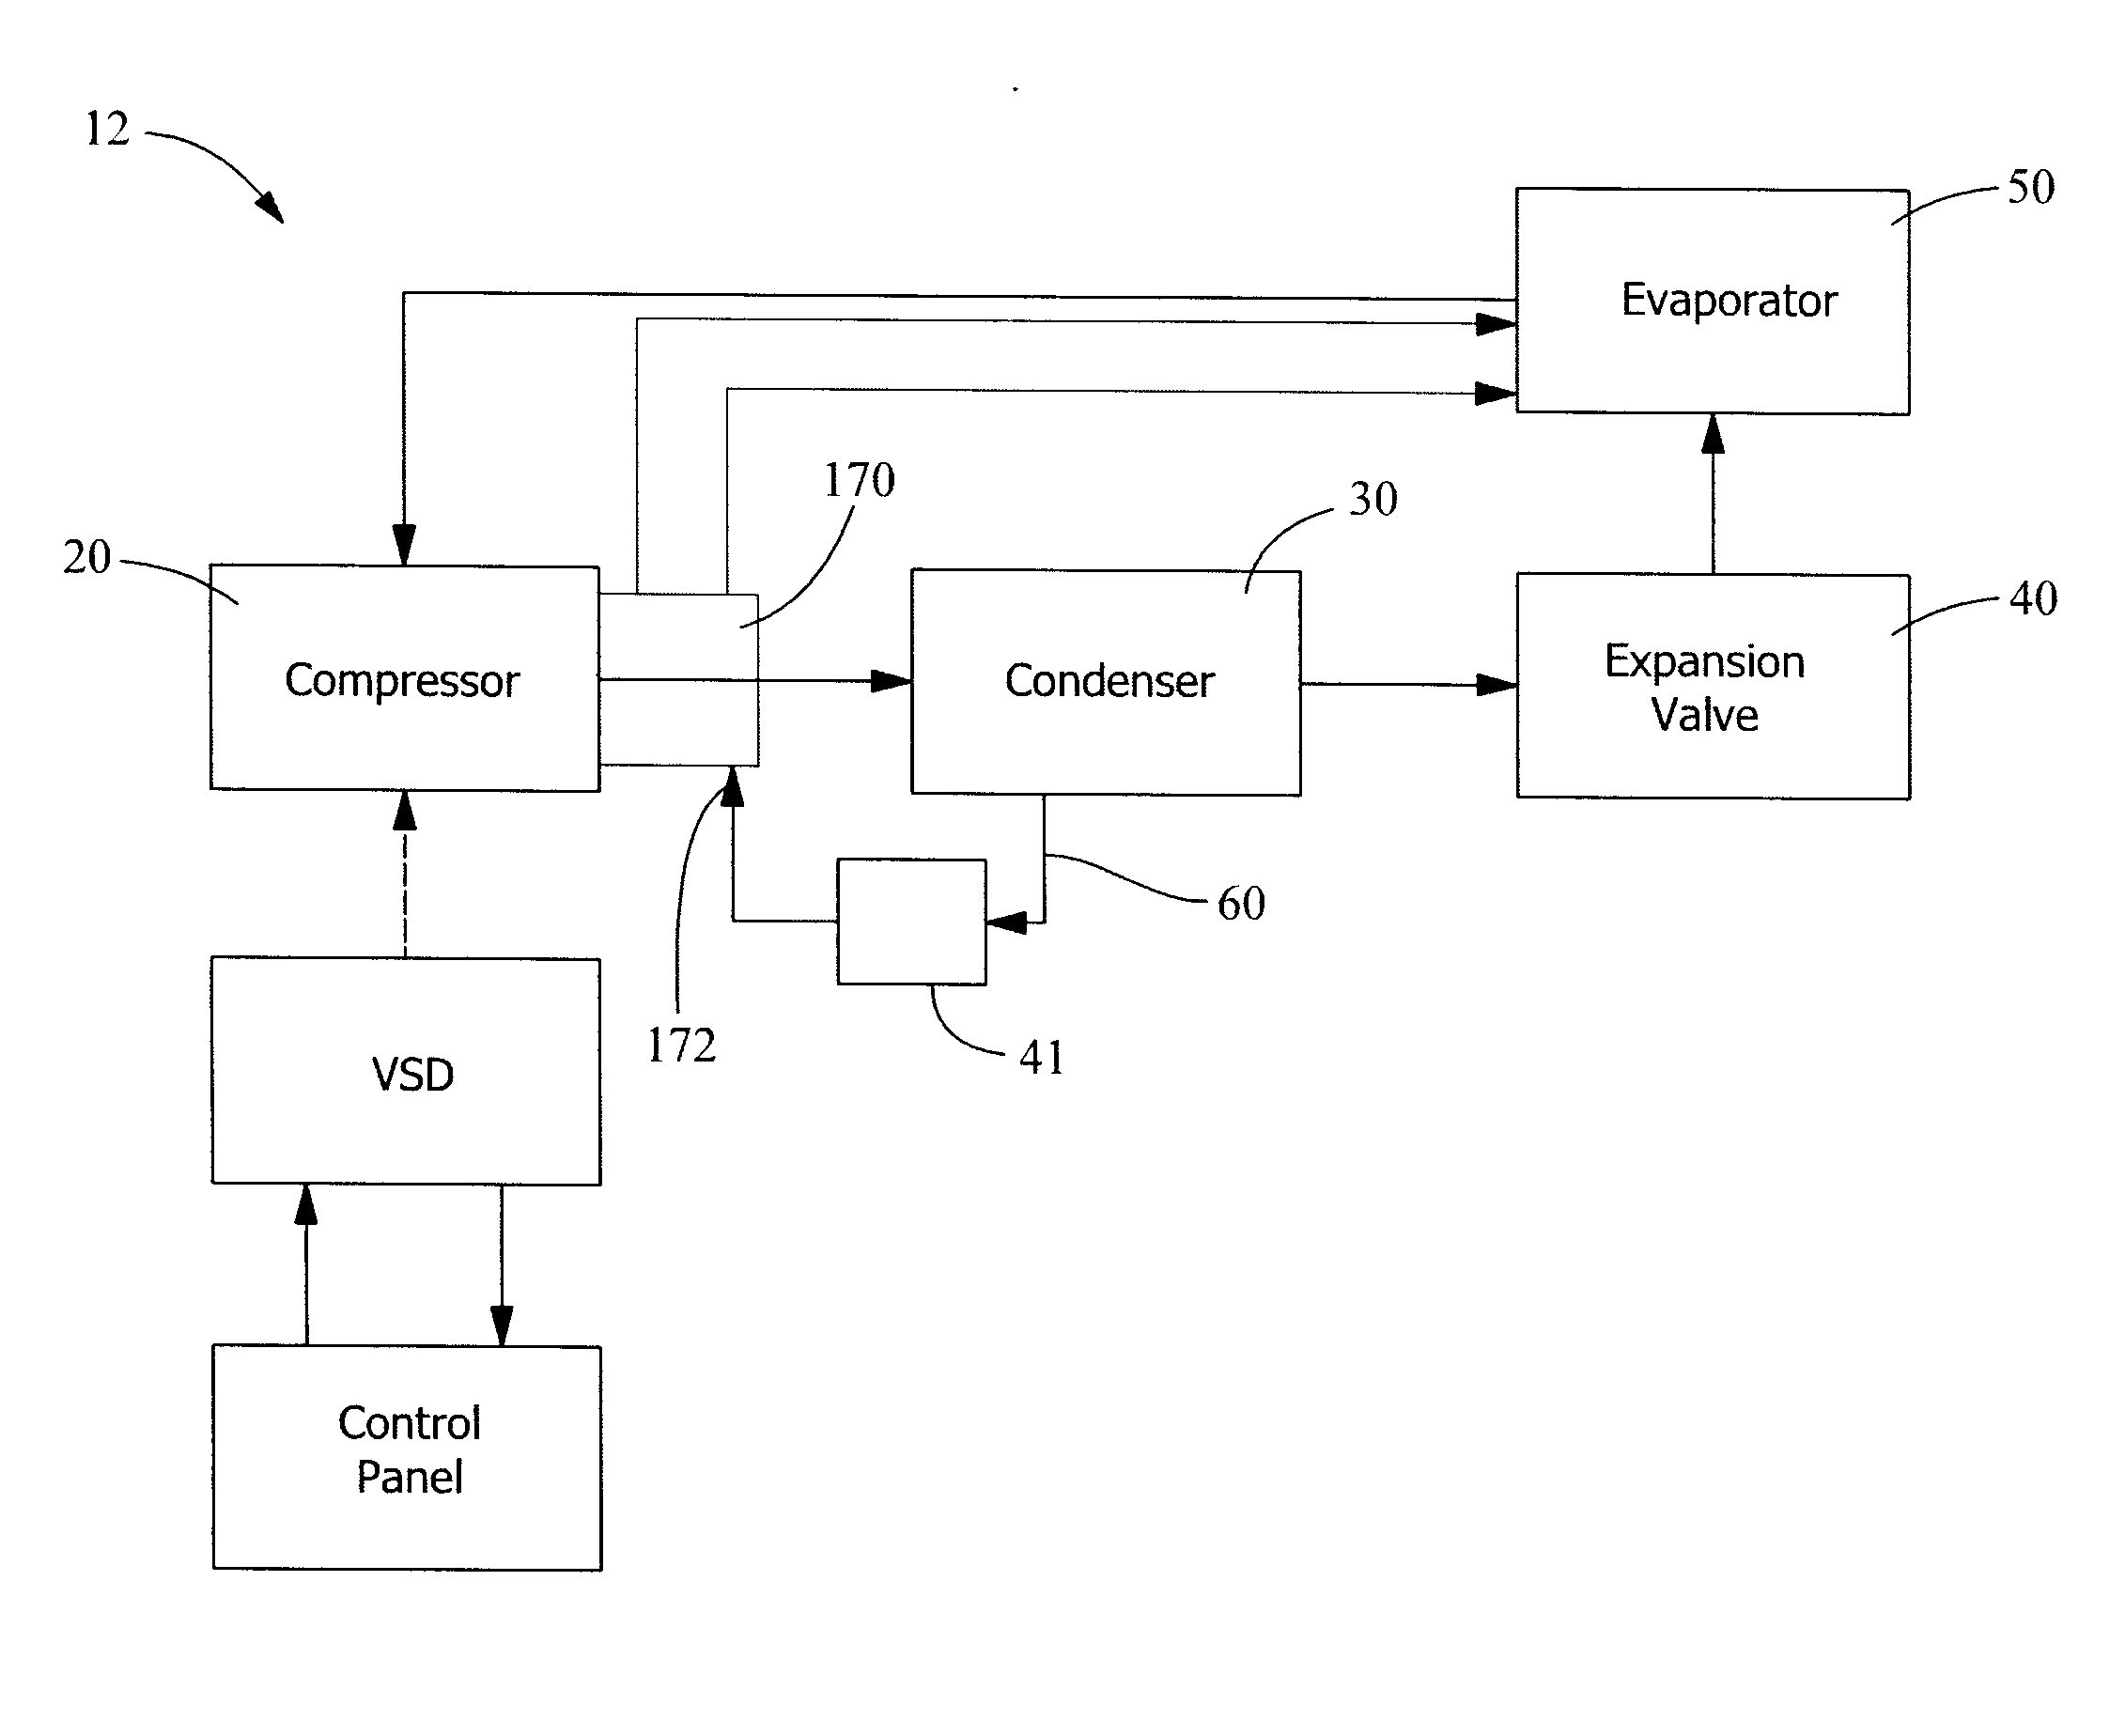 Motor cooling method for a compressor